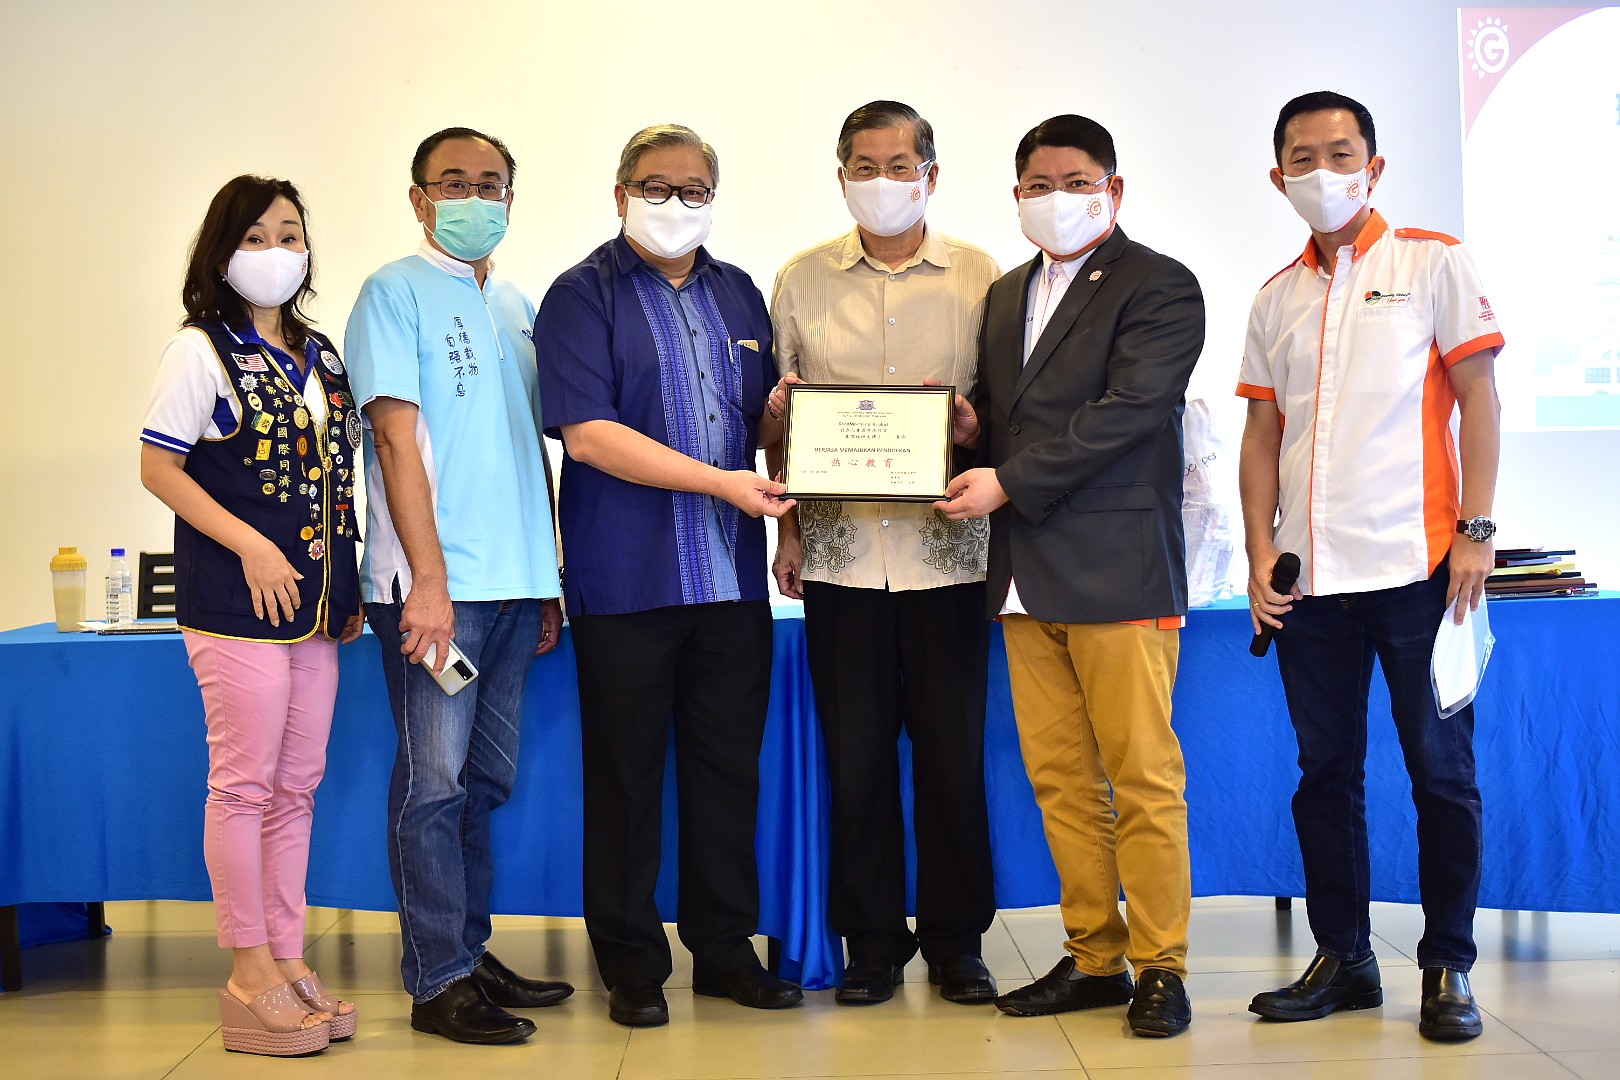 赠送环保口罩移交仪式 Reusable Mask Distribution Ceremony - Johor 15.08.2020 5